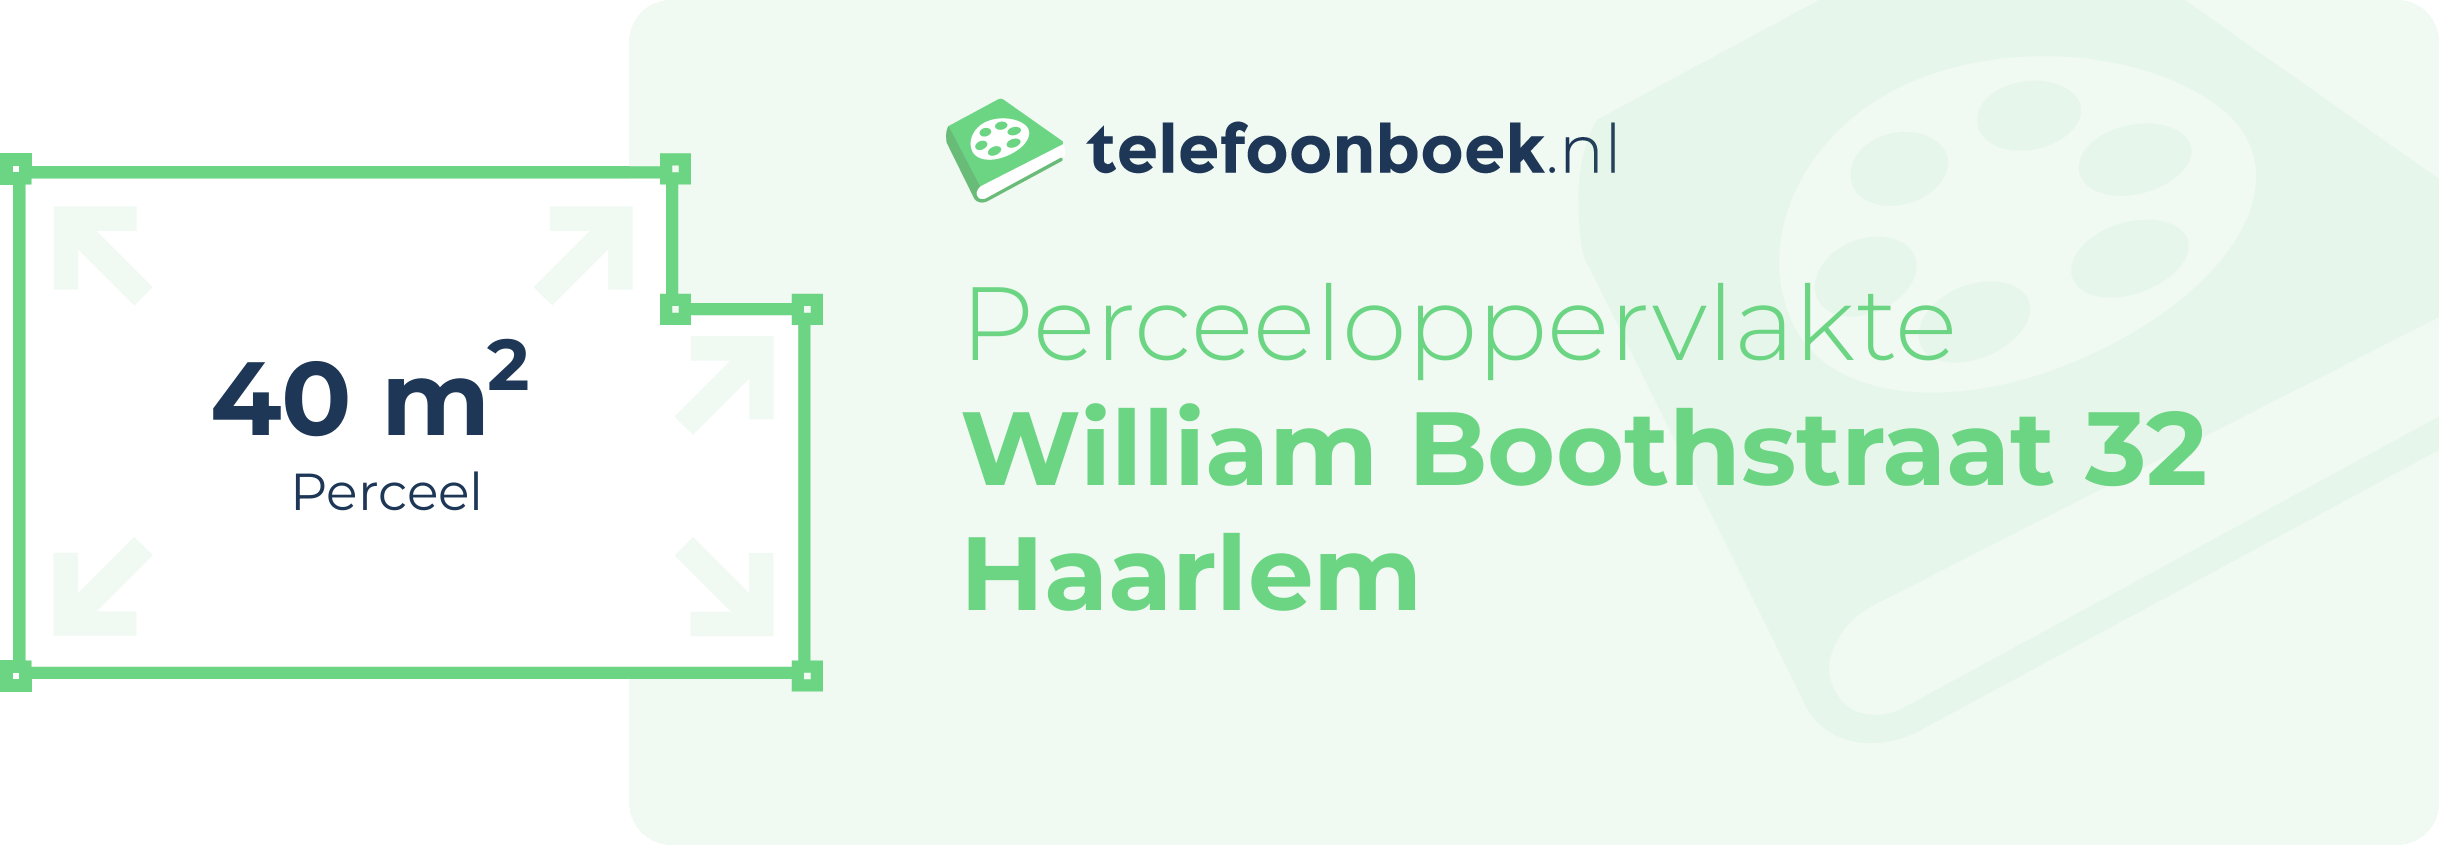 Perceeloppervlakte William Boothstraat 32 Haarlem